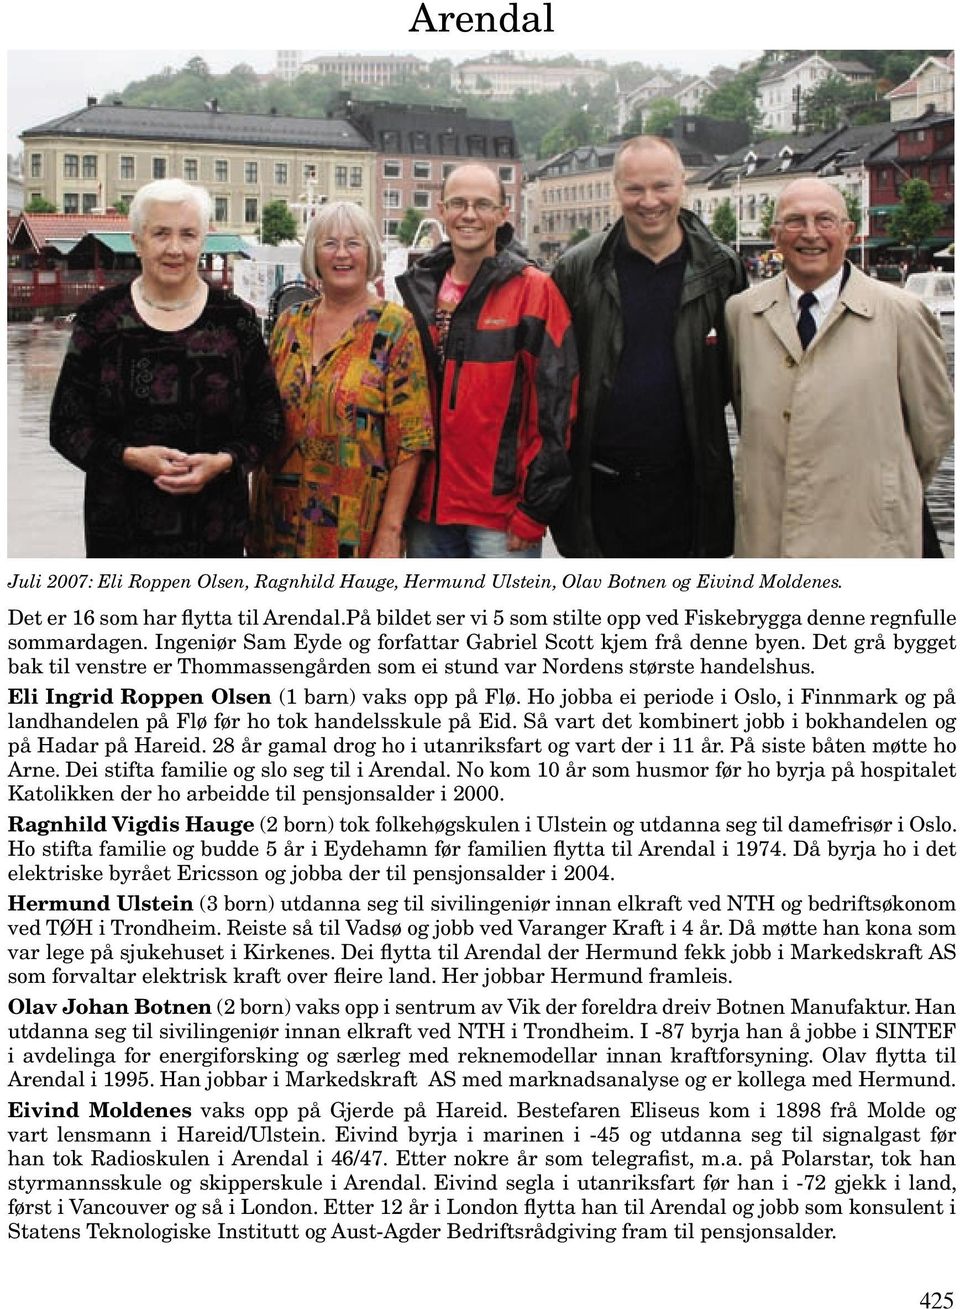 Arendal. Juli 2007: Eli Roppen Olsen, Ragnhild Hauge, Hermund Ulstein, Olav  Botnen og Eivind Moldenes. - PDF Gratis nedlasting